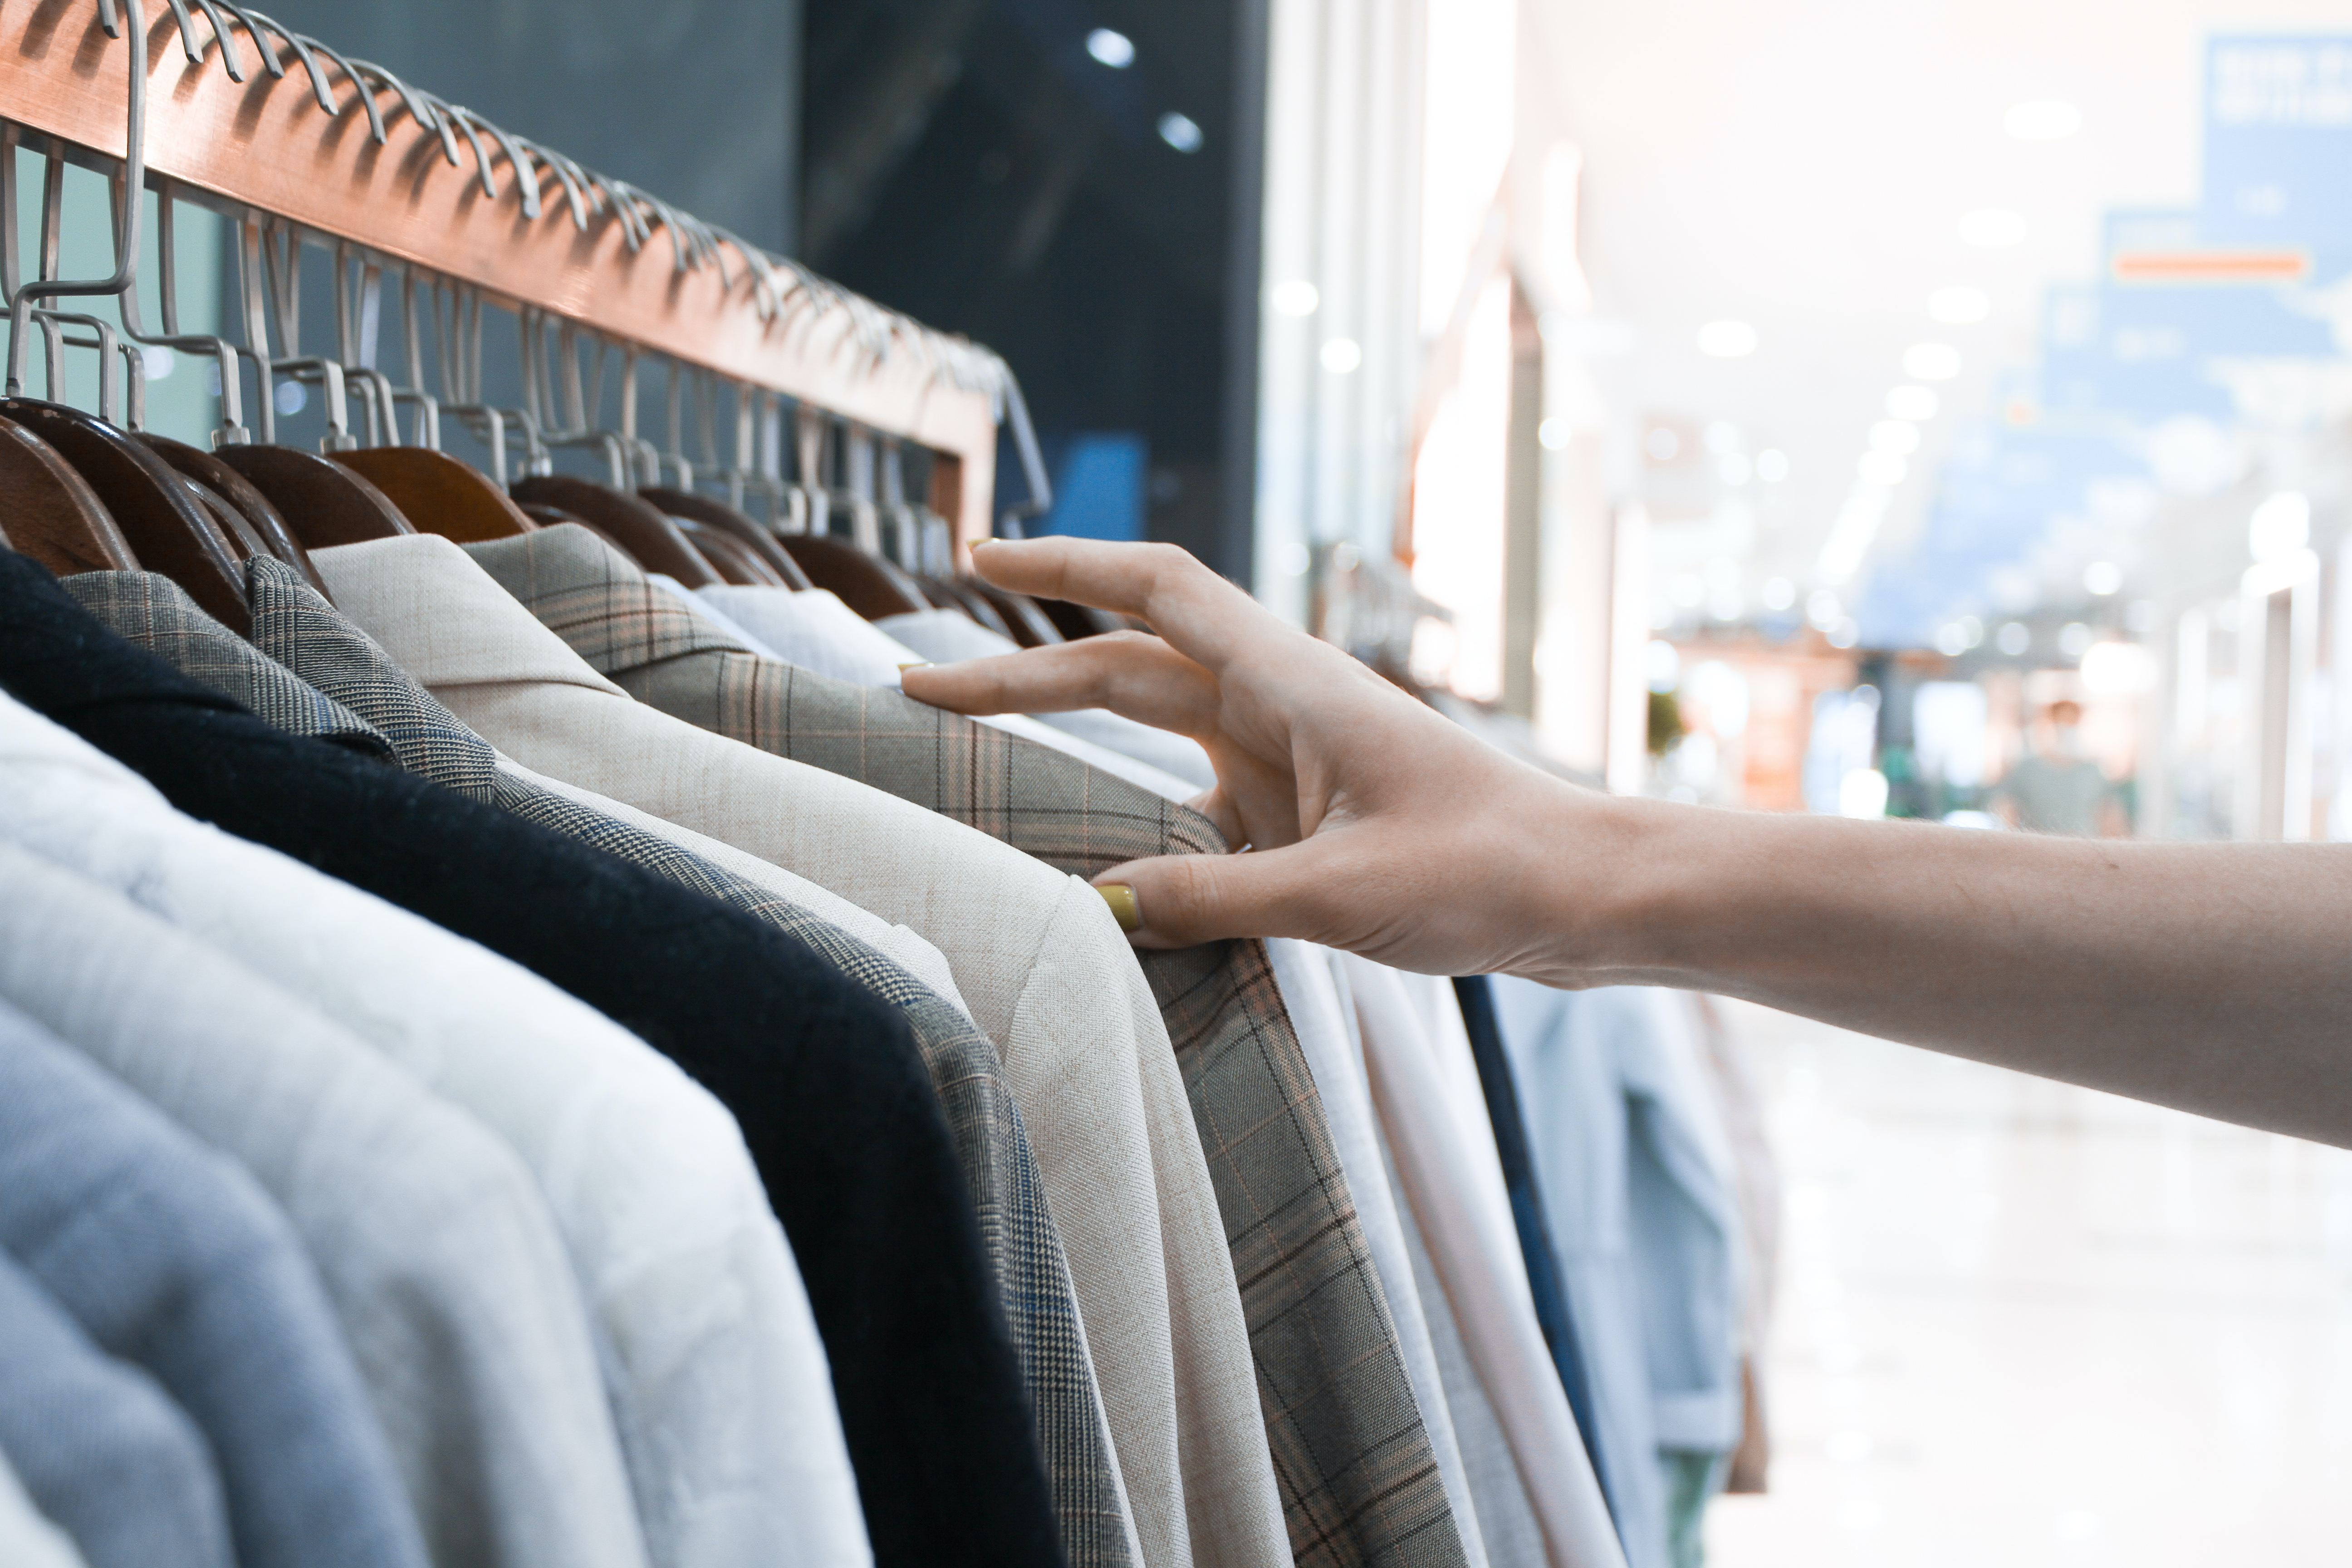 Imagem ilustrativa de uma pessoa escolhendo roupas numa loja